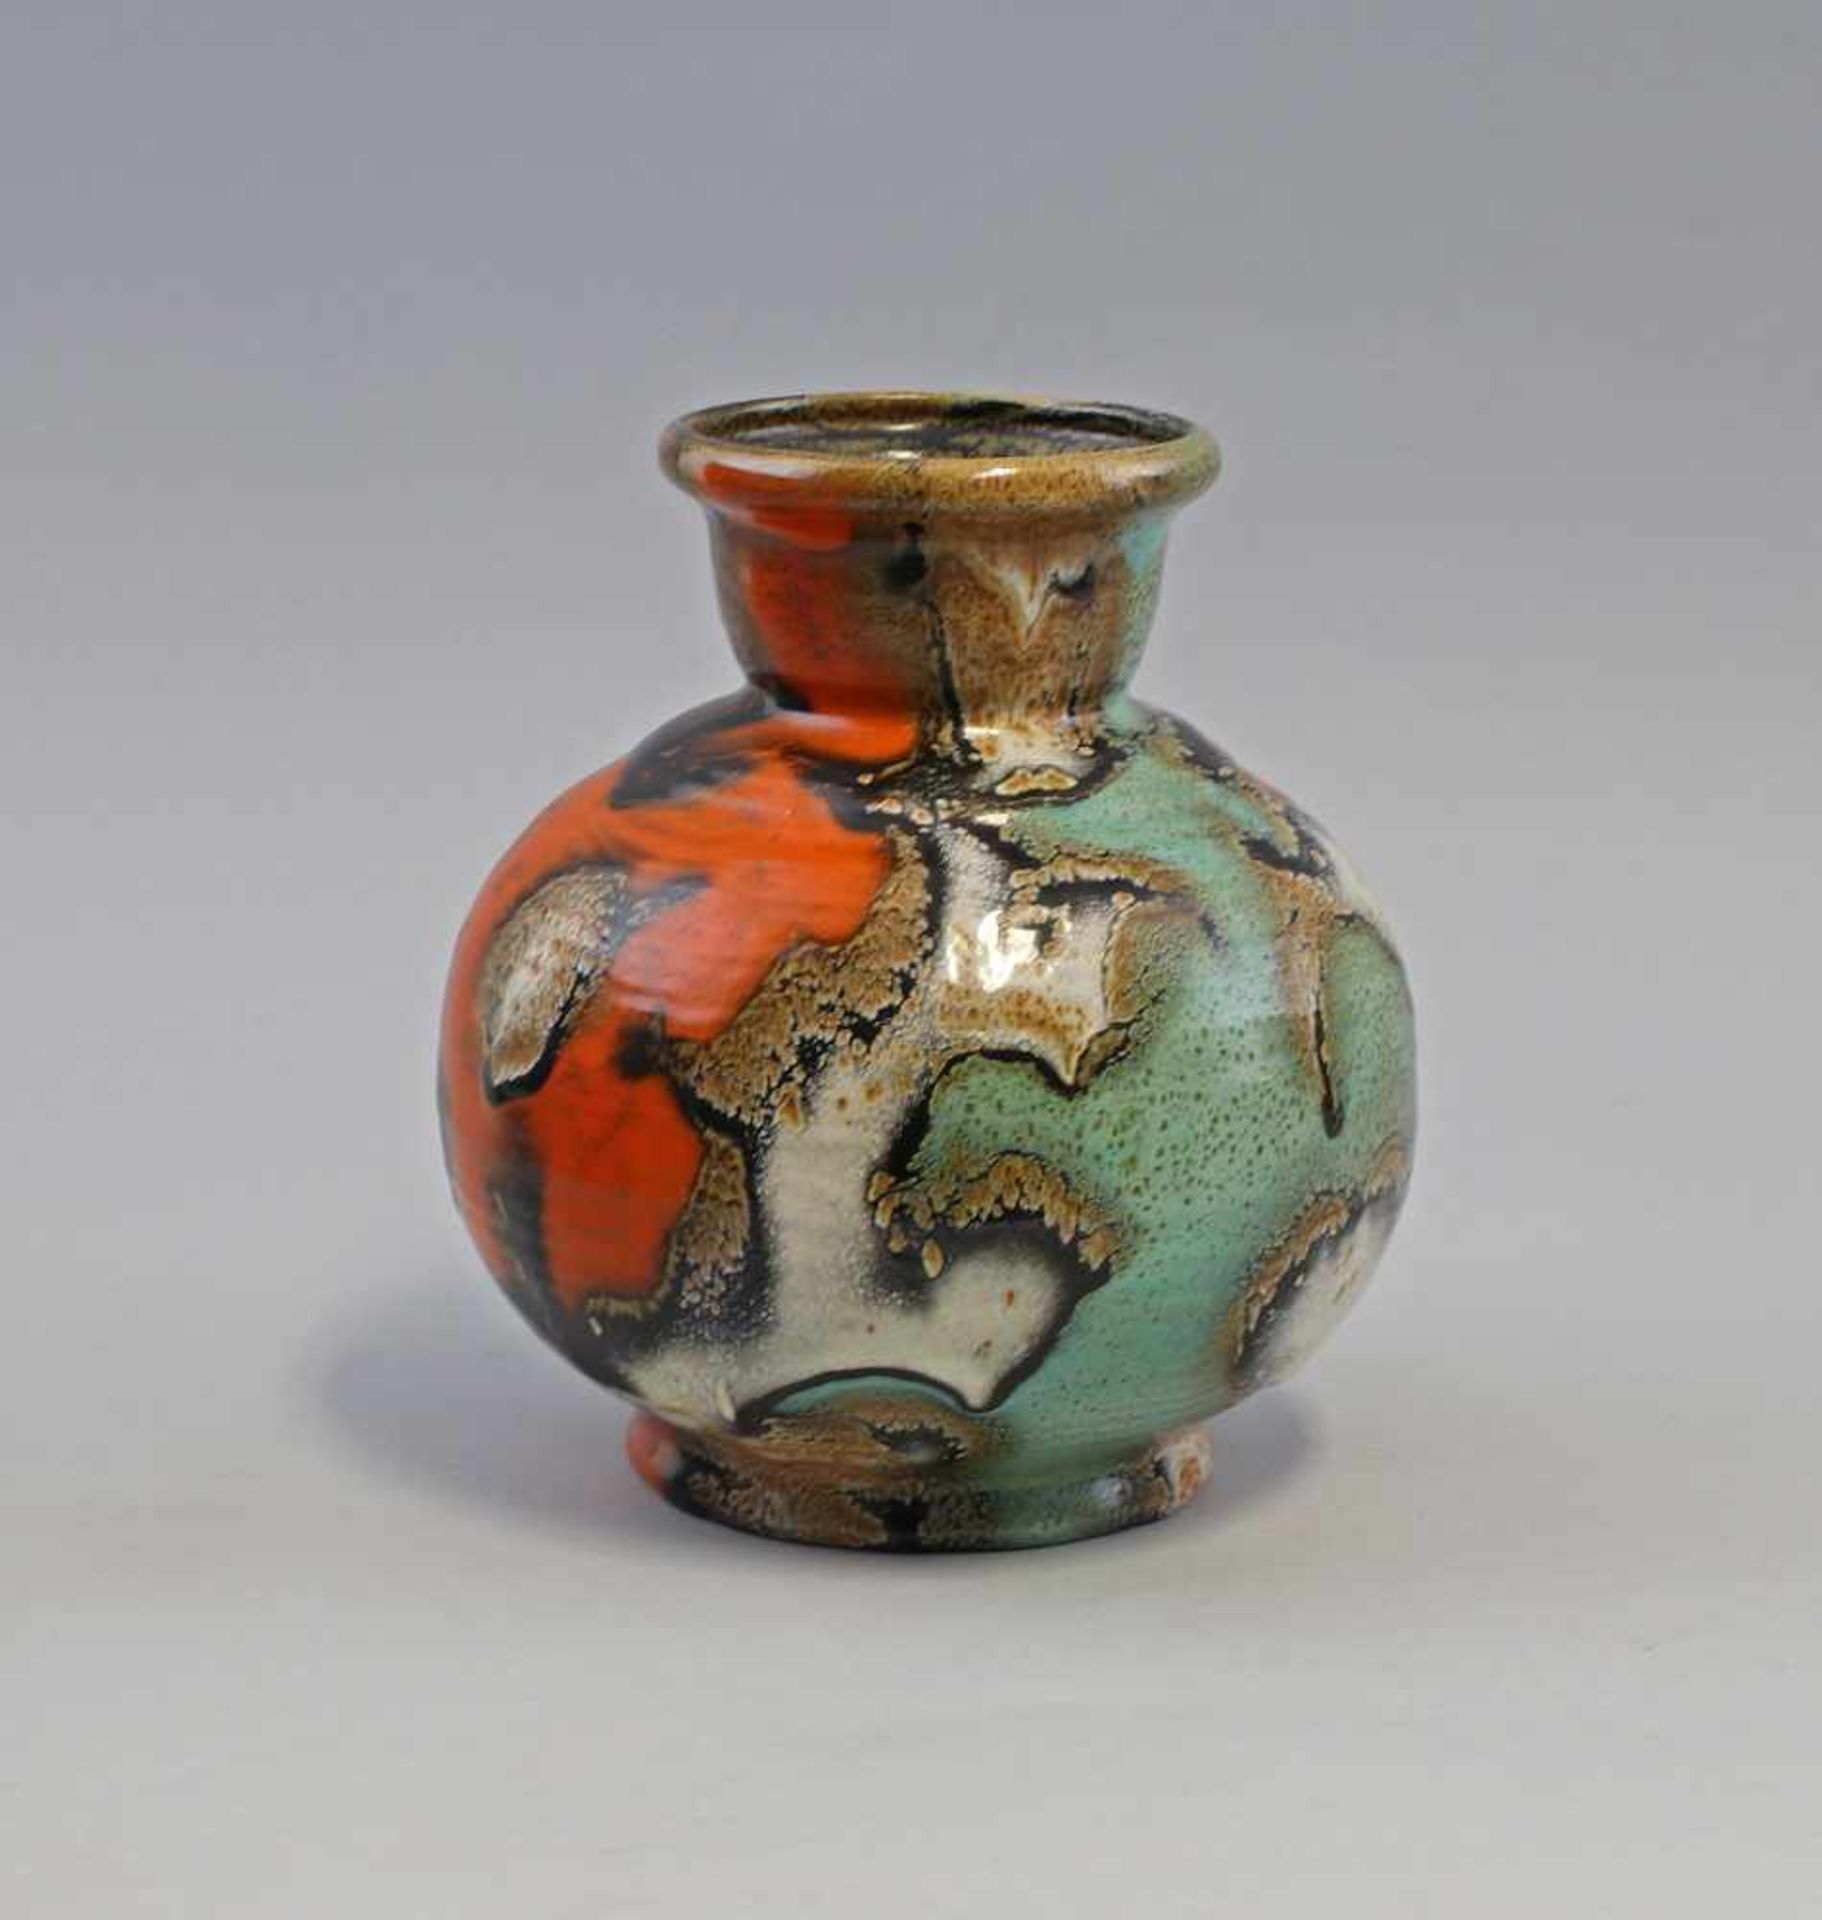 Vase Gouda Art décoArt déco Vase Gouda Holland um 1925, sandfarbener Scherben, Kristallglasur in